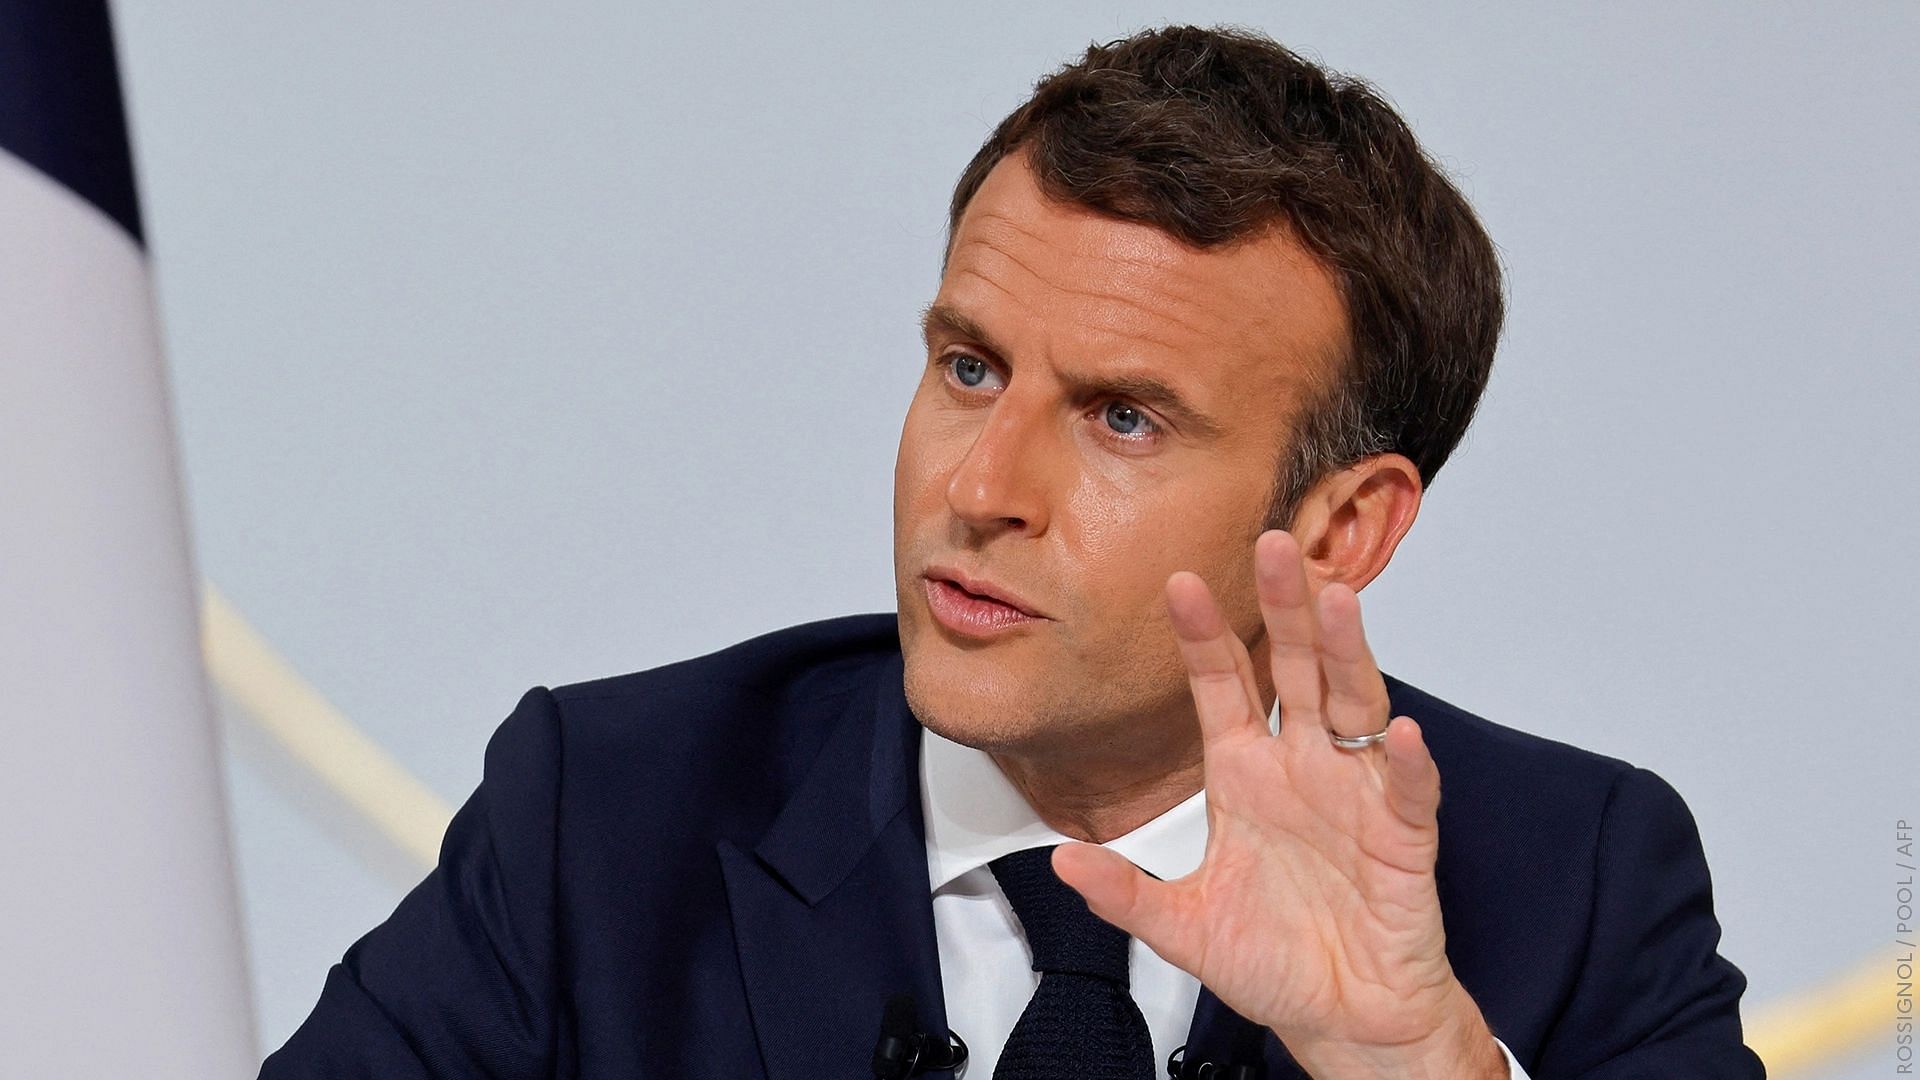 2022 राष्ट्रपति चुनाव में Emmanuel Macron का सामना मरीन ला पेन से है